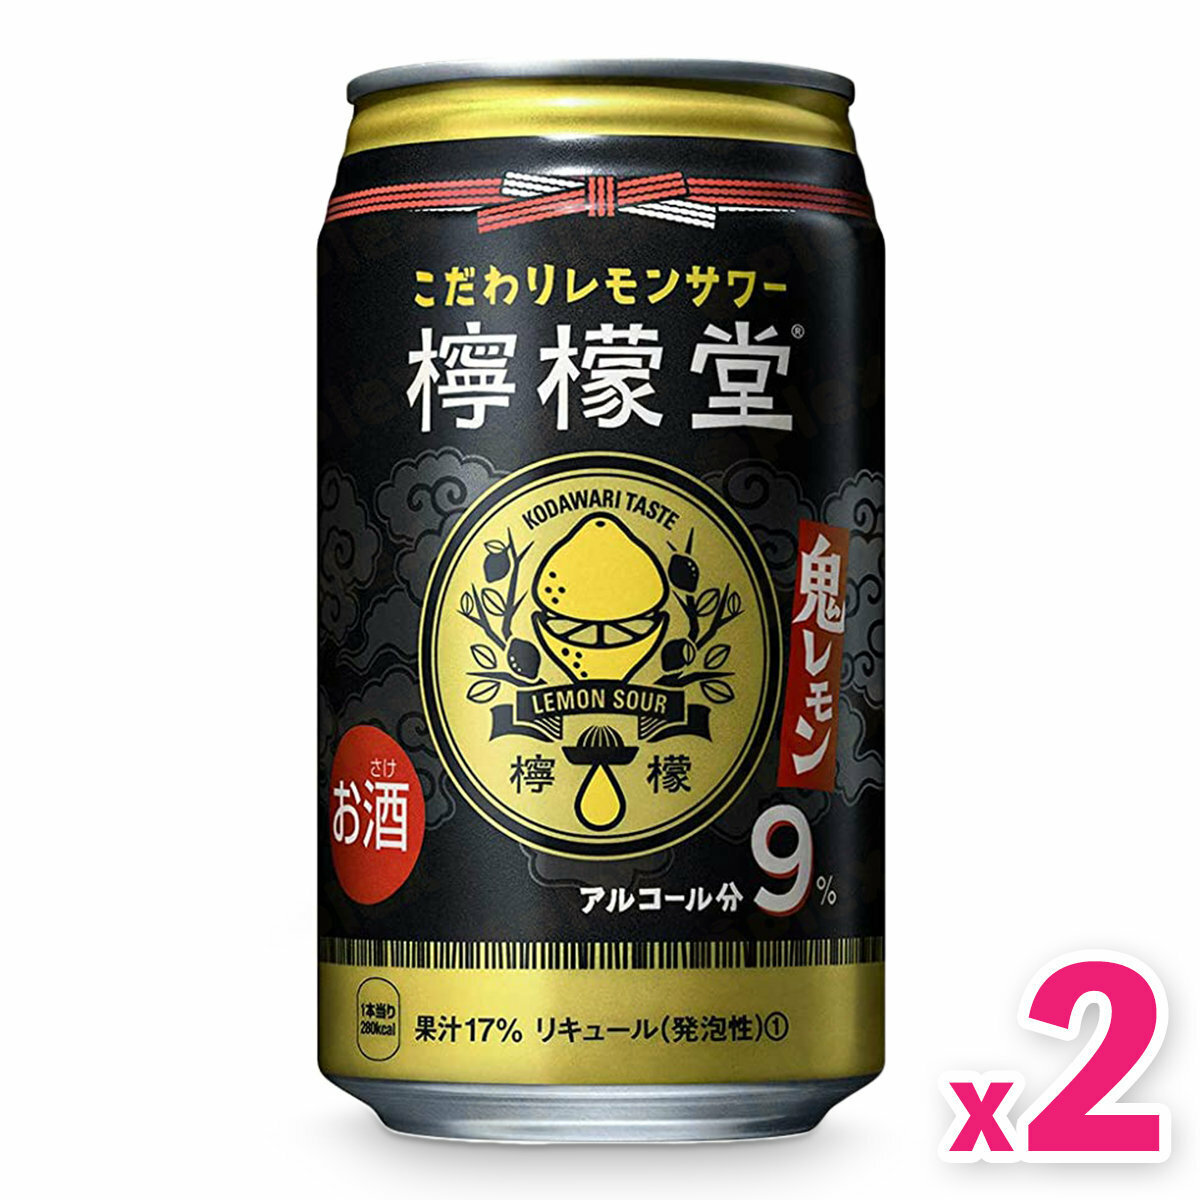 可口可樂- 「檸檬堂」鬼檸檬特濃氣泡酒(350ml) x 2罐#日本可口可樂